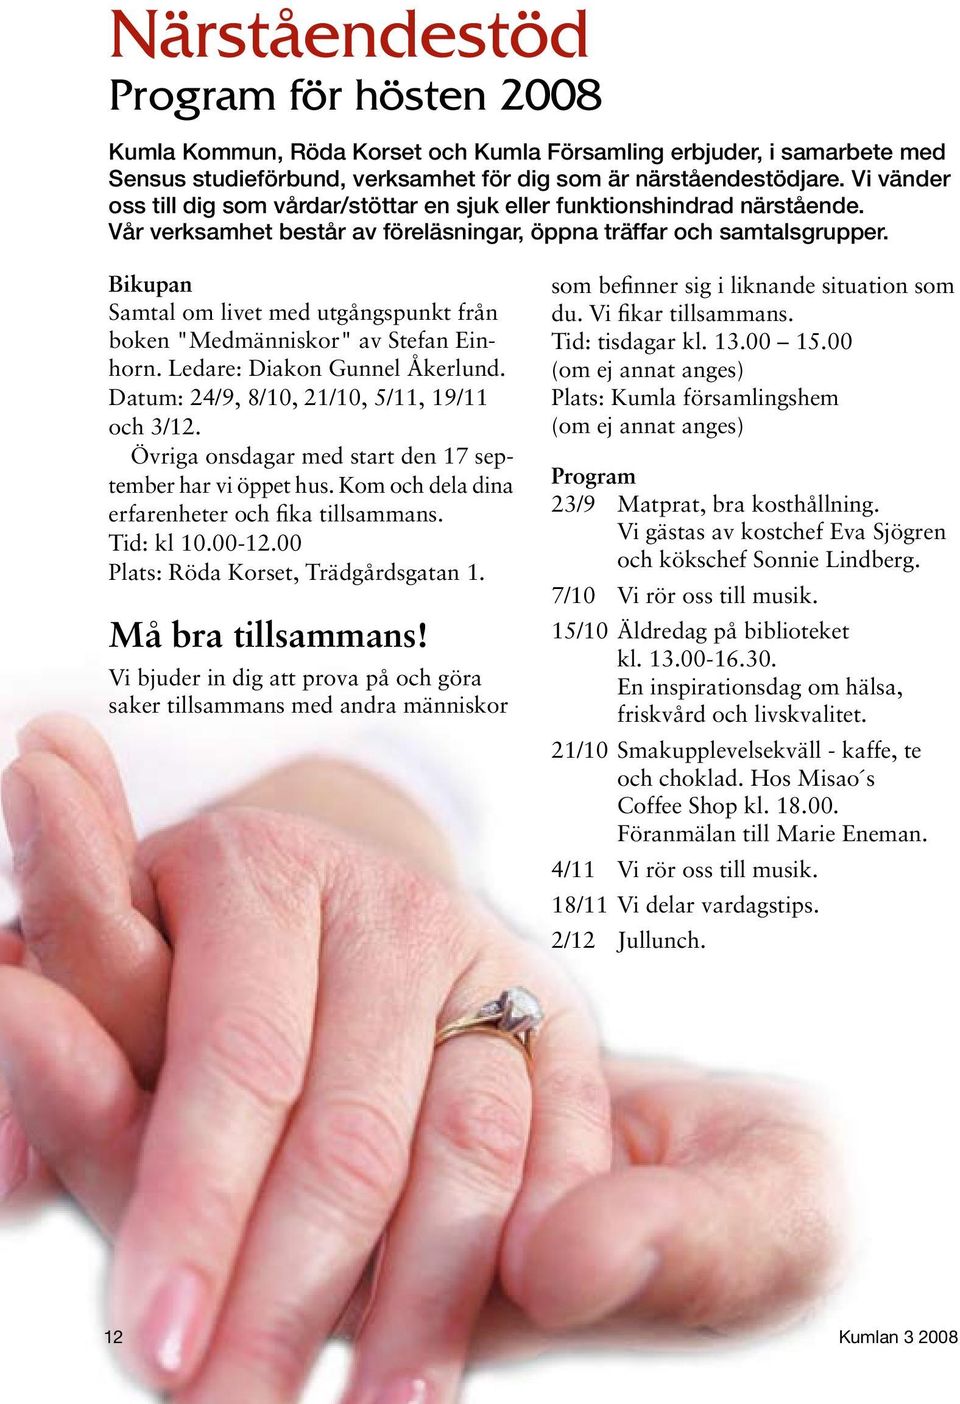 Bikupan Samtal om livet med utgångspunkt från boken "Medmänniskor" av Stefan Einhorn. Ledare: Diakon Gunnel Åkerlund. Datum: 24/9, 8/10, 21/10, 5/11, 19/11 och 3/12.